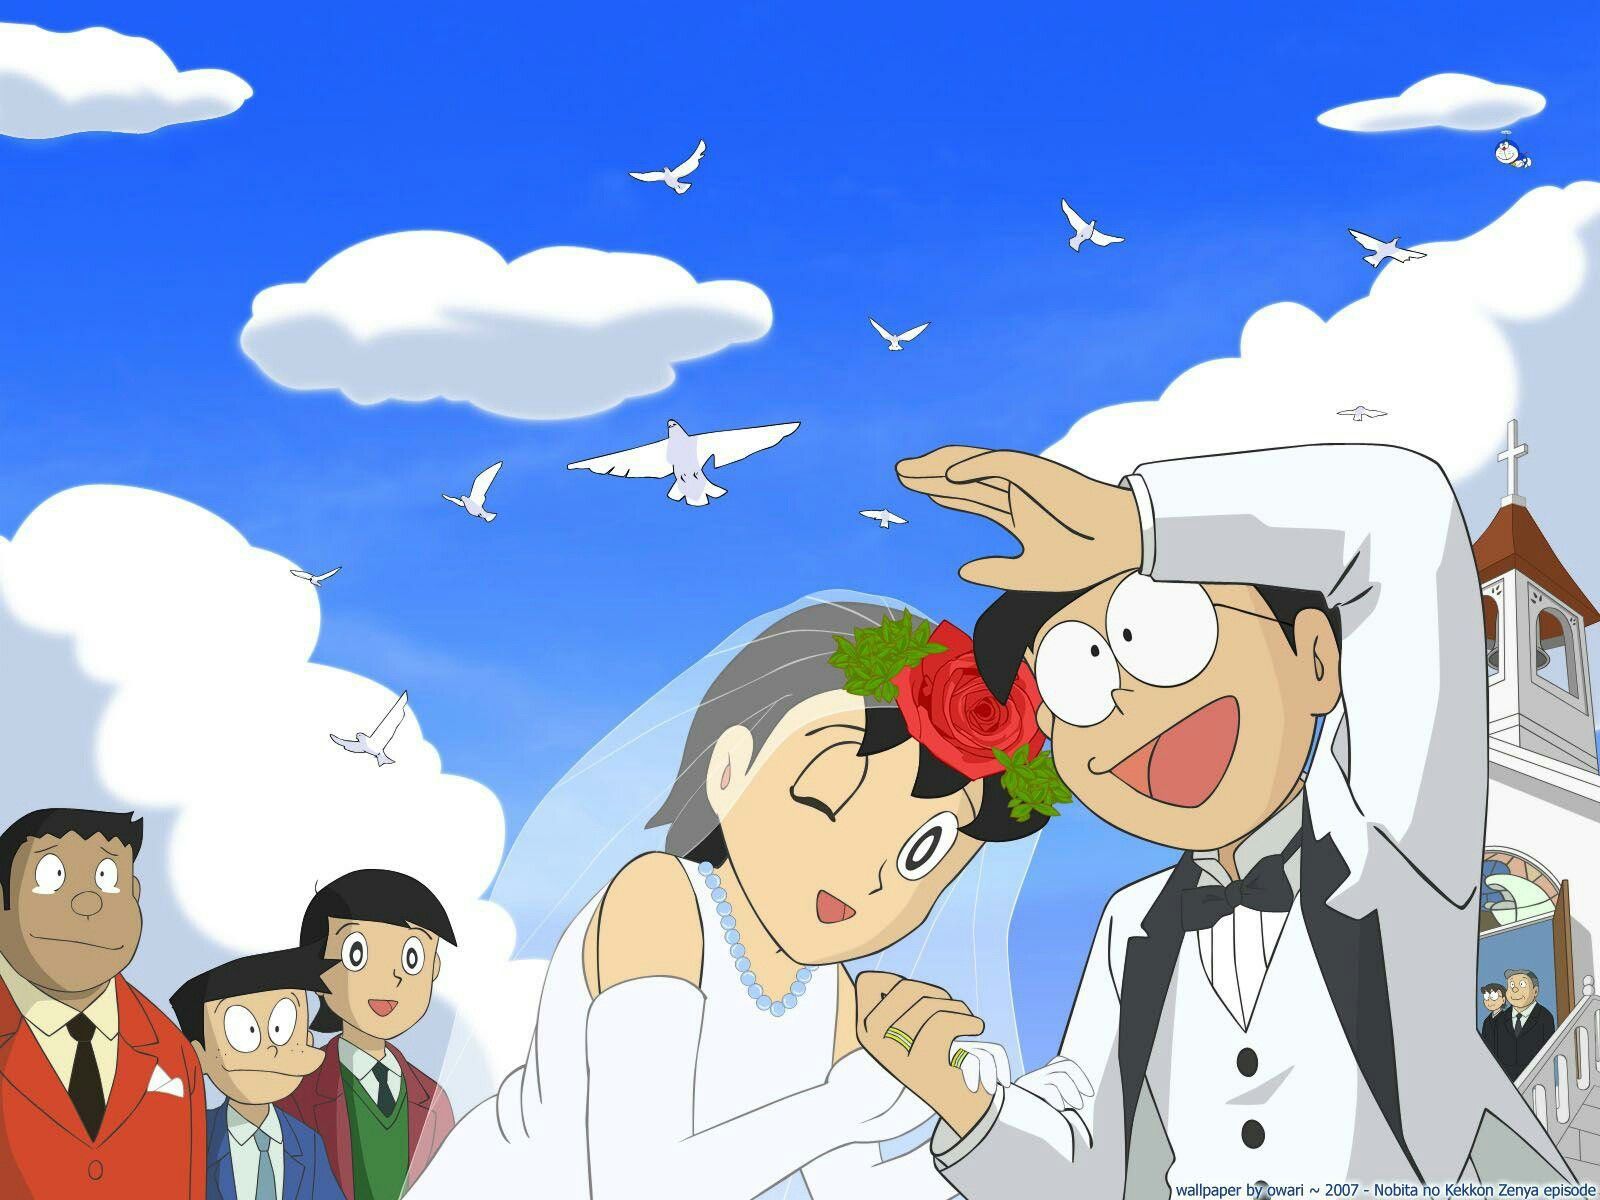 Tình bạn đáng yêu giữa Nobita và Doreamon luôn là chủ đề được yêu thích trong cộng đồng trẻ. Hãy xem hình ảnh tuyệt đẹp của Nobita - cậu bé mộng mơ, tinh nghịch và gần gũi với người bạn robot siêu đáng yêu này.